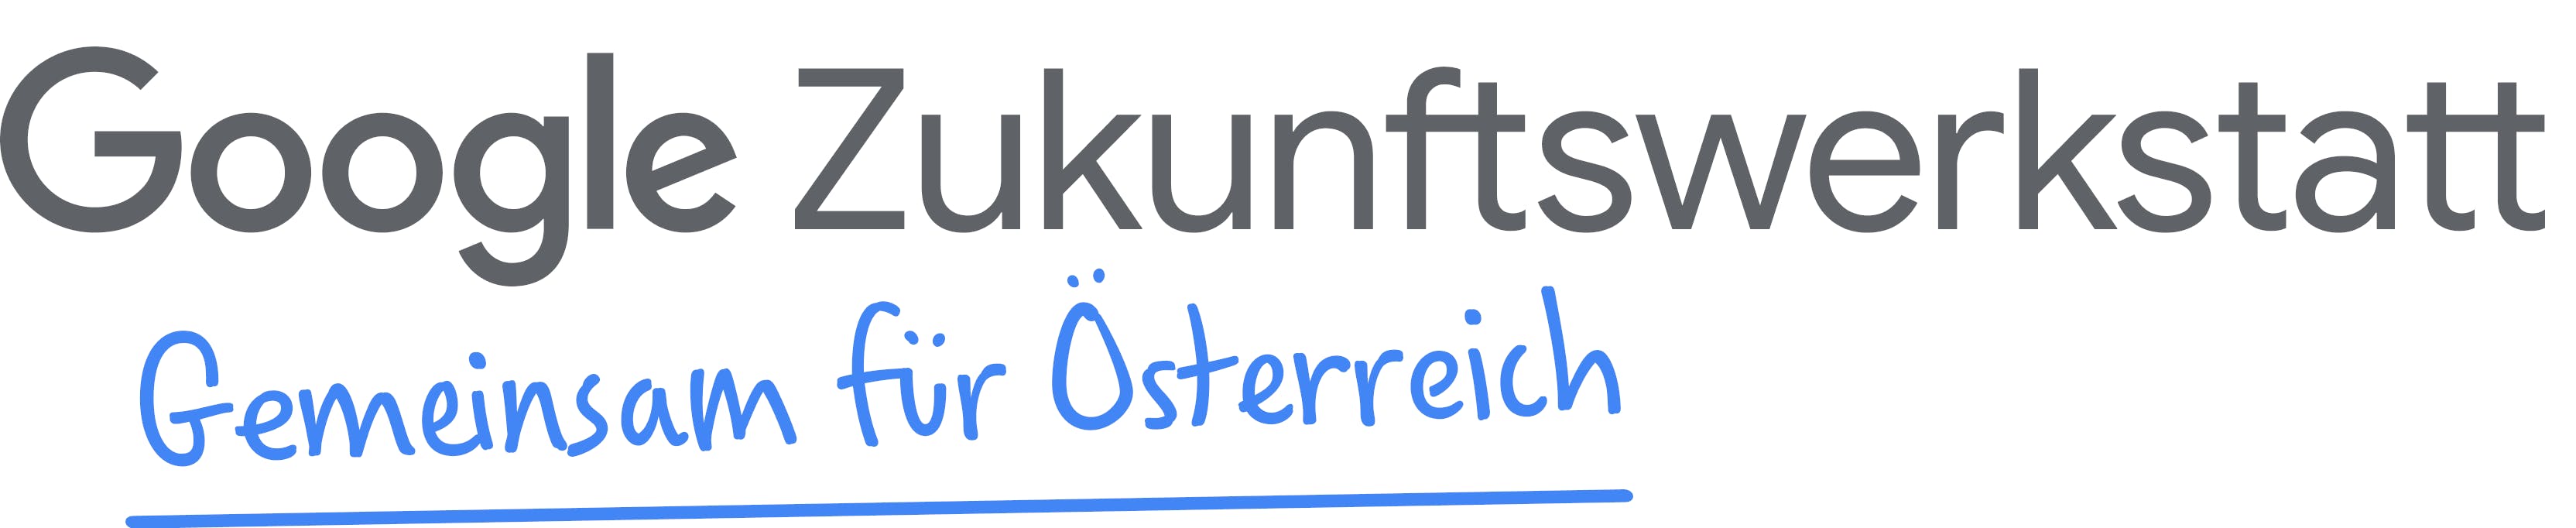 google-zukunftswerkstatt-gemeinsam-fur-osterreich-logo-2-2-edited